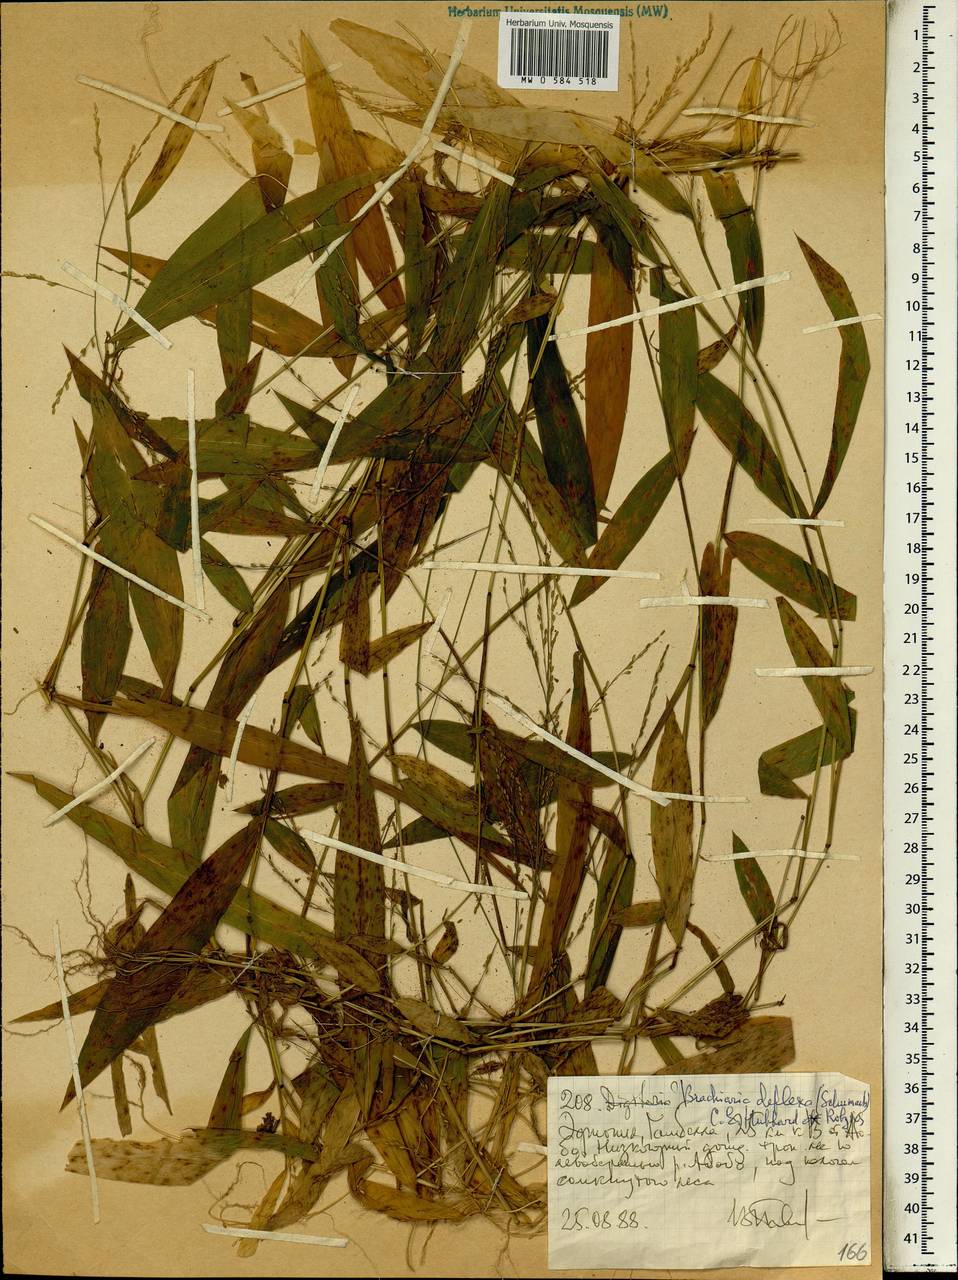 Brachiaria deflexa (Schumach.) C.E.Hubb. ex Robyns, Африка (AFR) (Эфиопия)